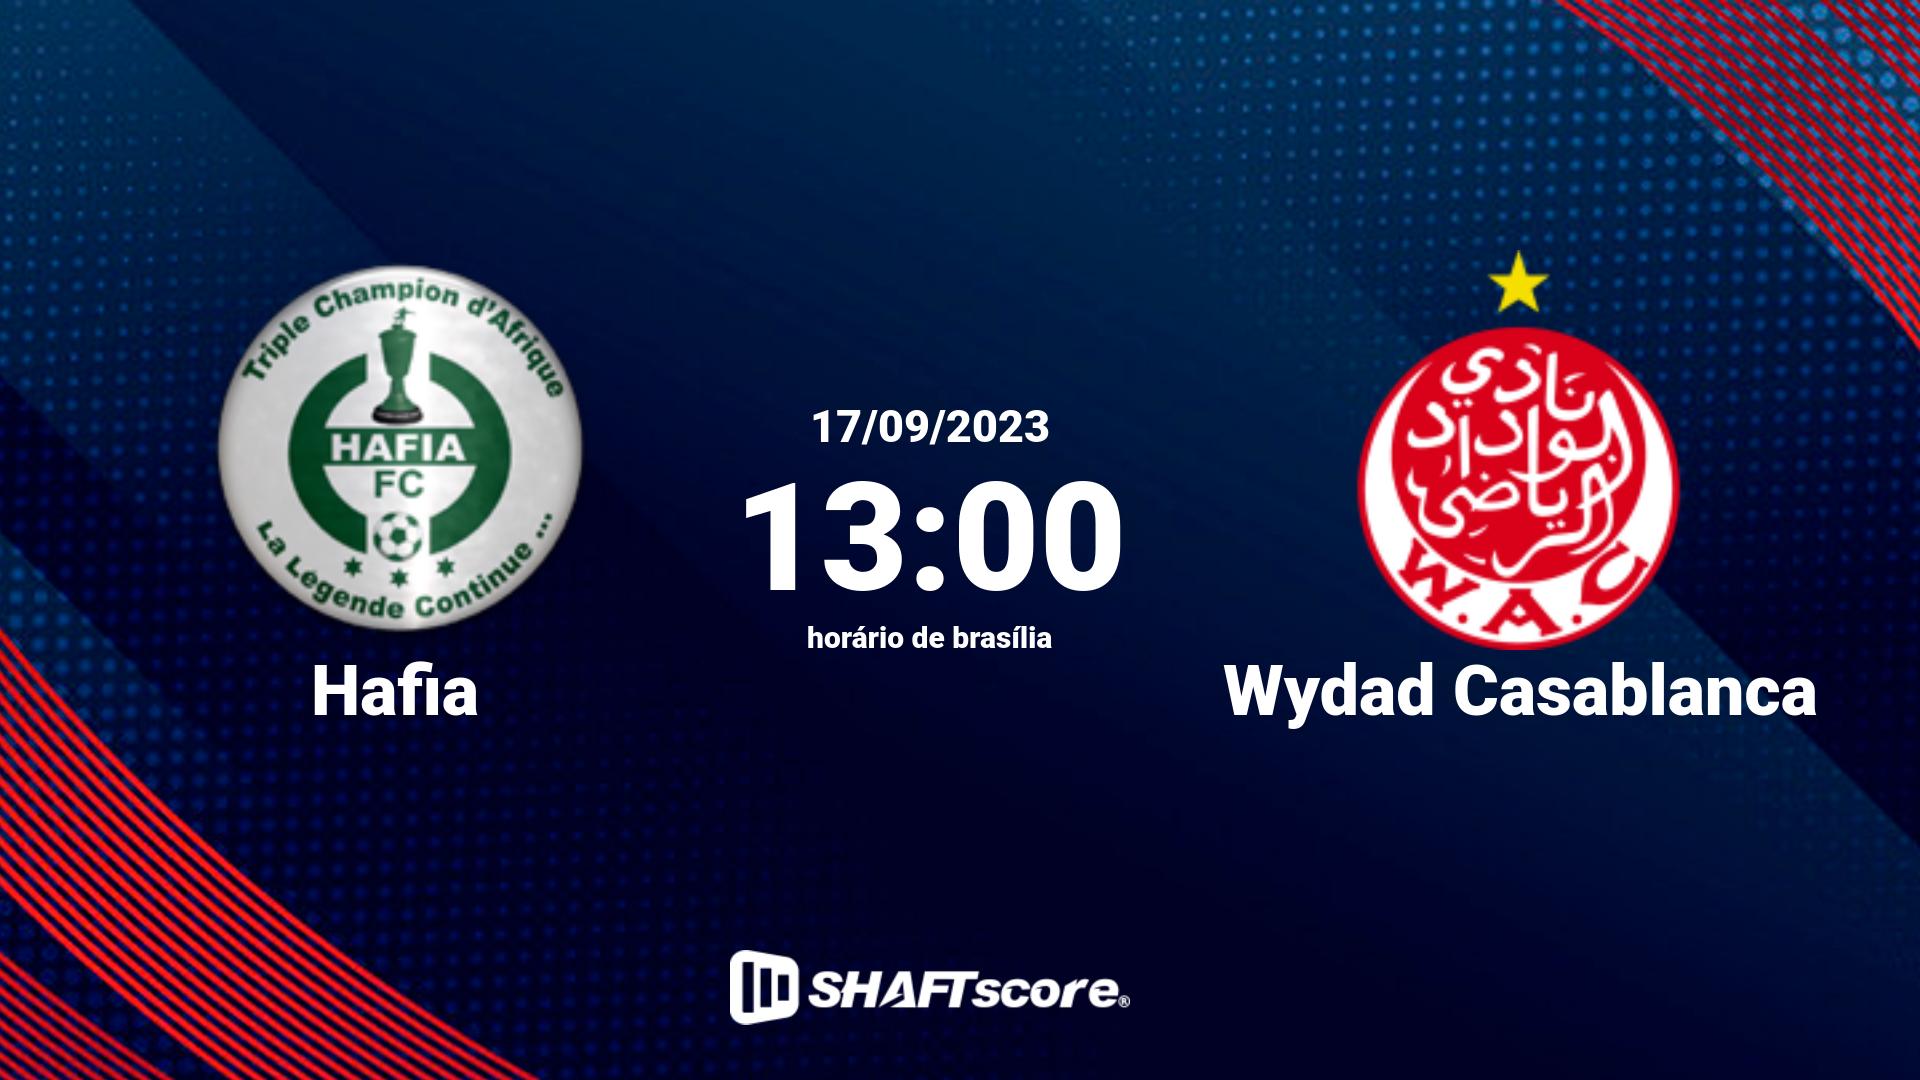 Estatísticas do jogo Hafia vs Wydad Casablanca 17.09 13:00